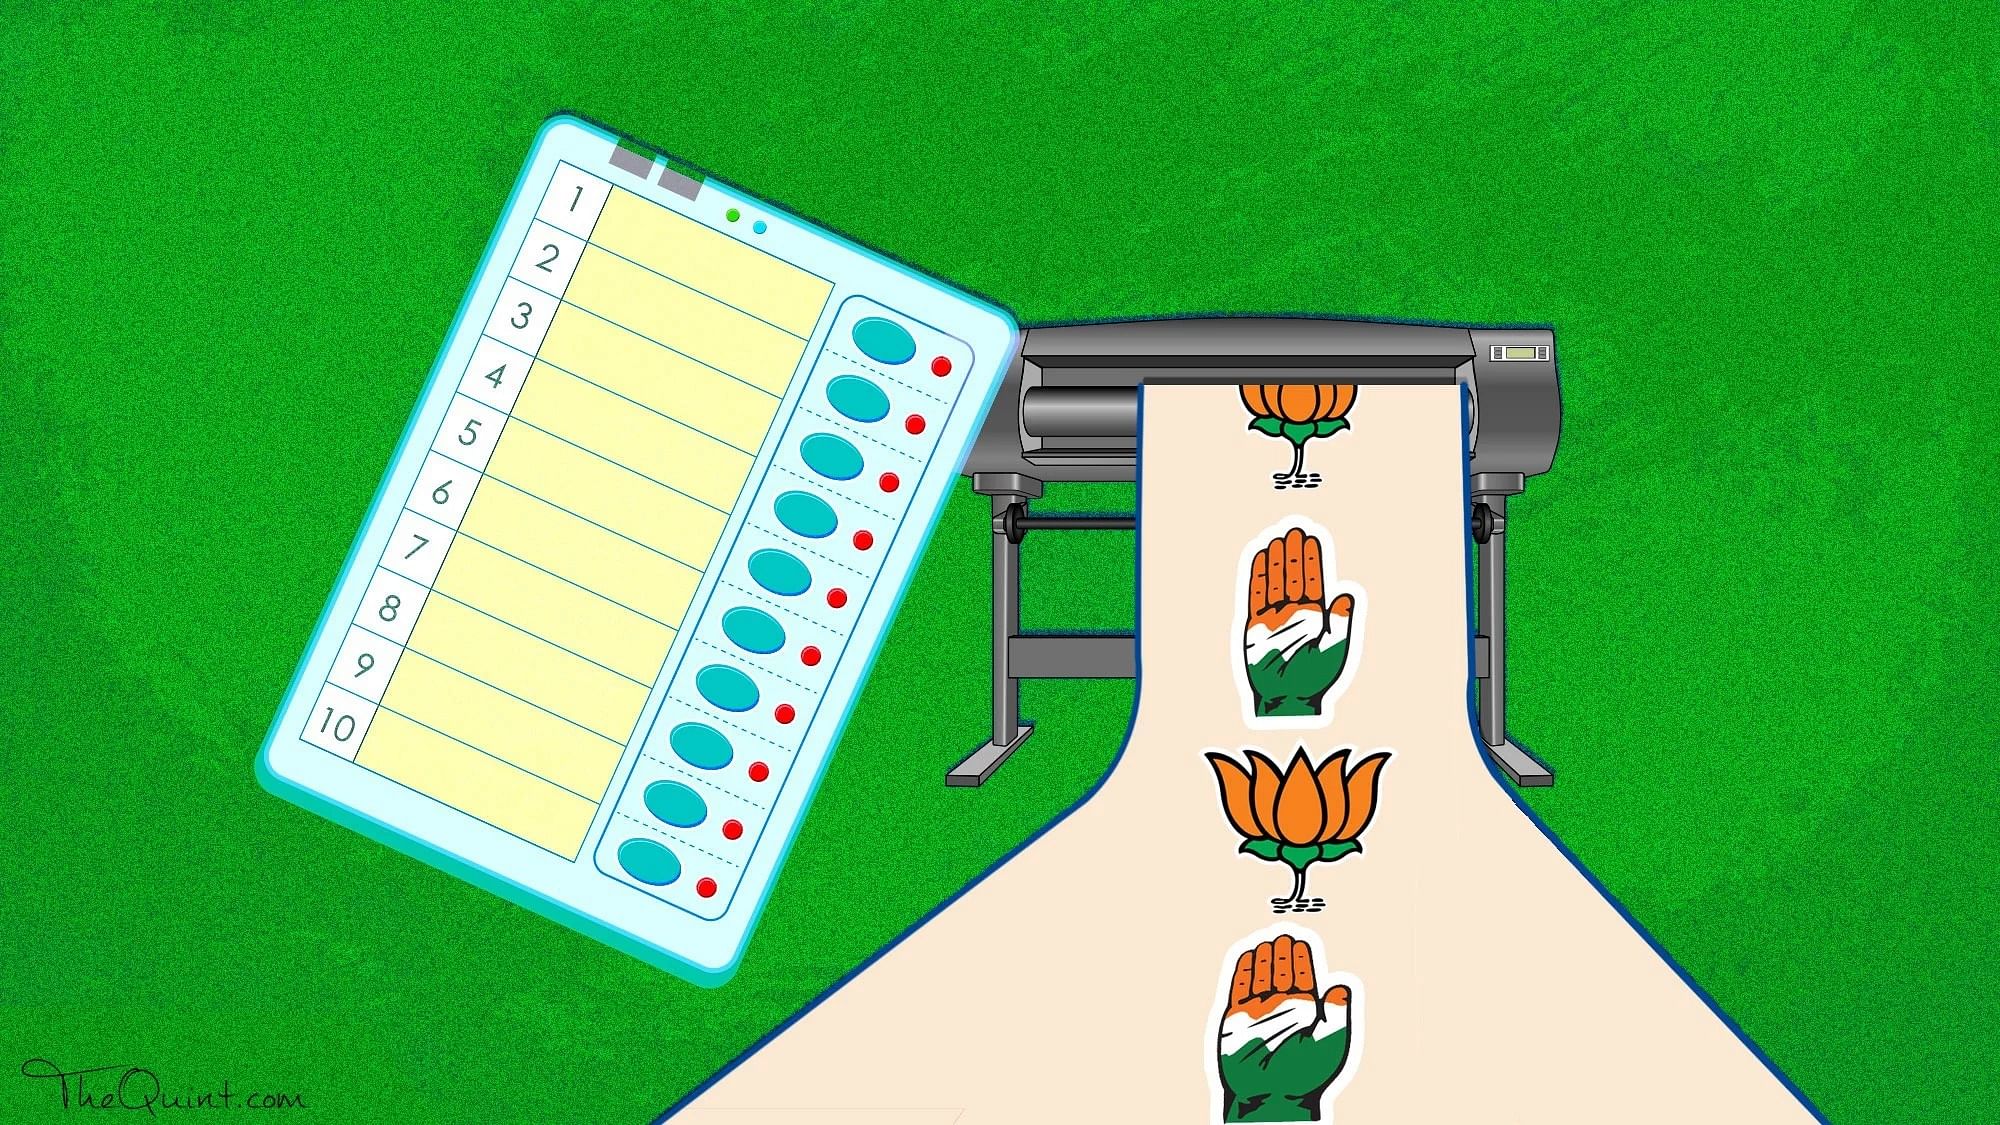 विधानसभा चुनाव में बीजेपी और कांग्रेस पार्टी के बीच कांटे की टक्कर